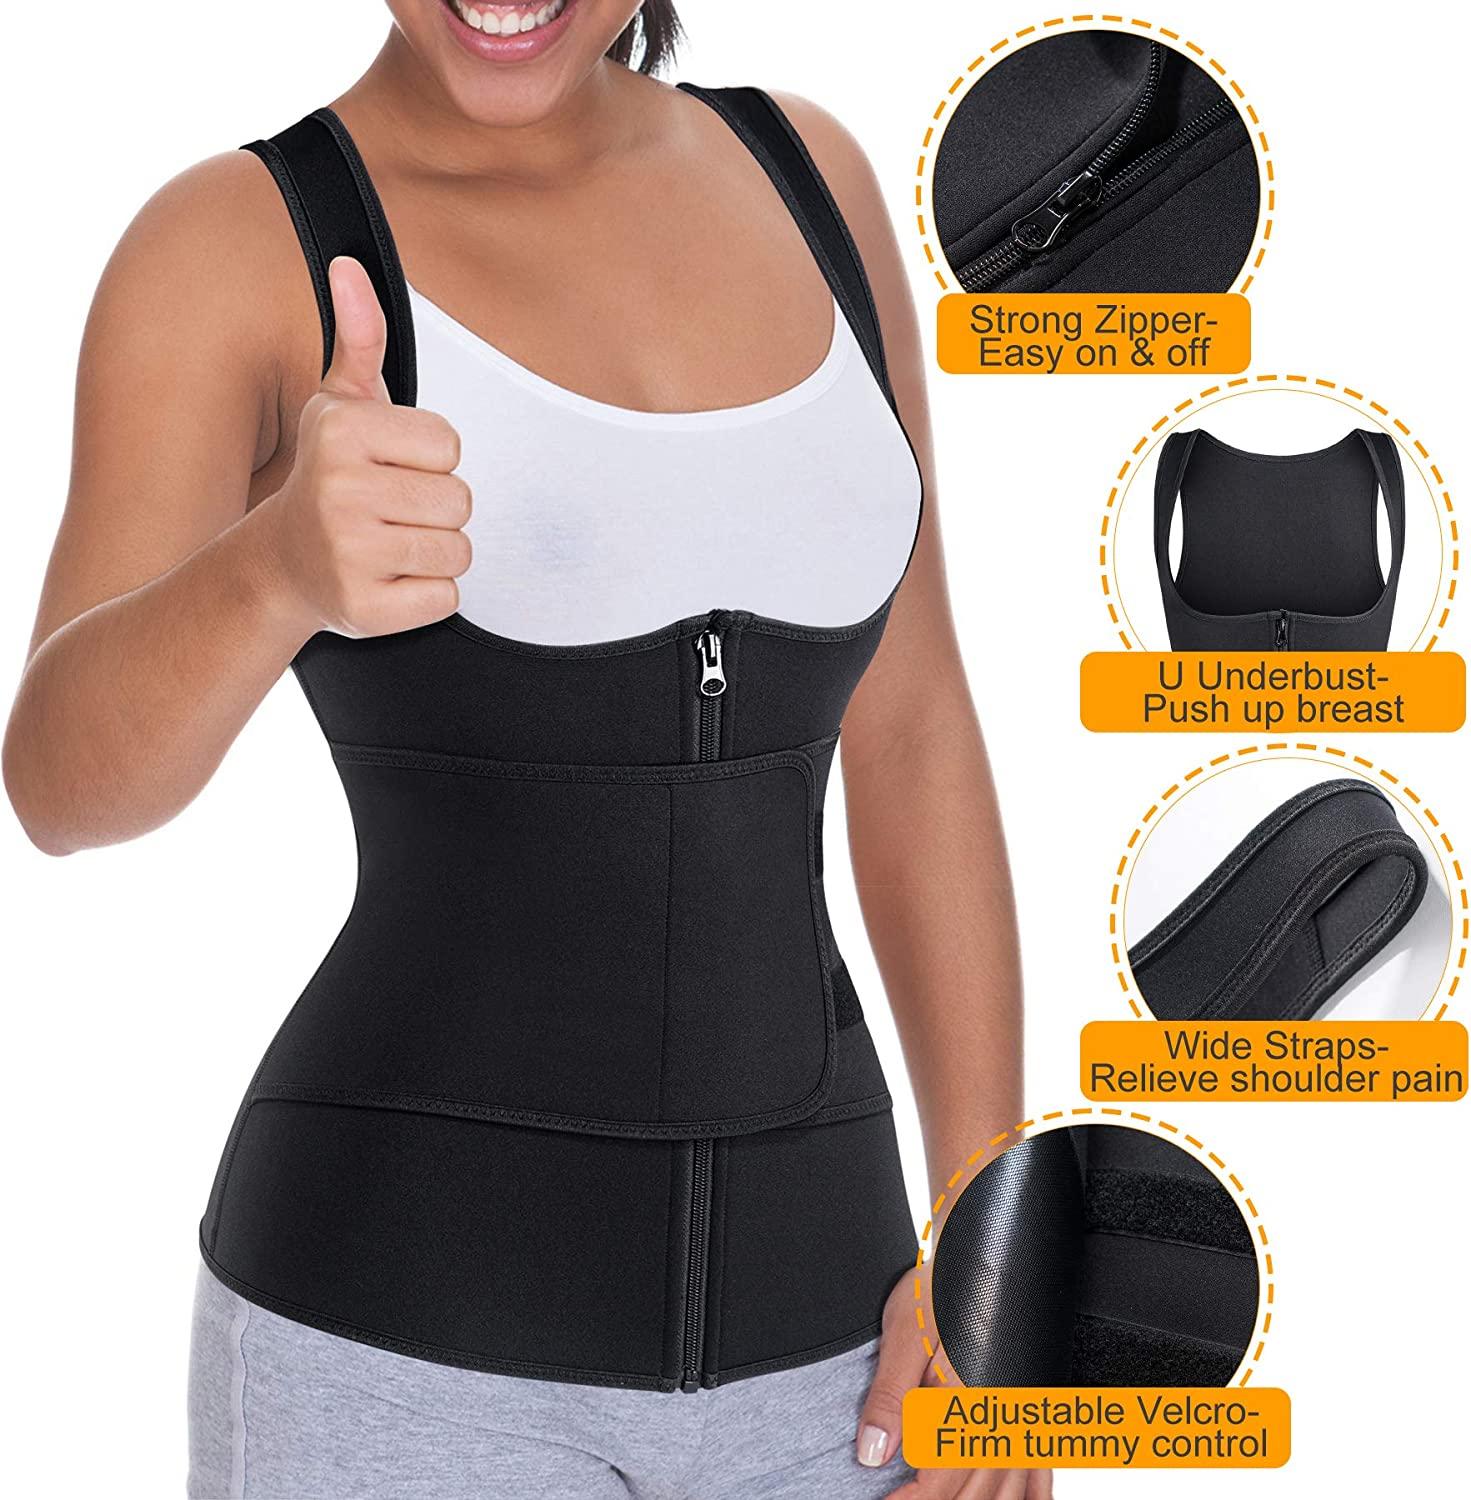 Buy Nebility Women Latex Waist Trainer Bodysuit Slim Full Body